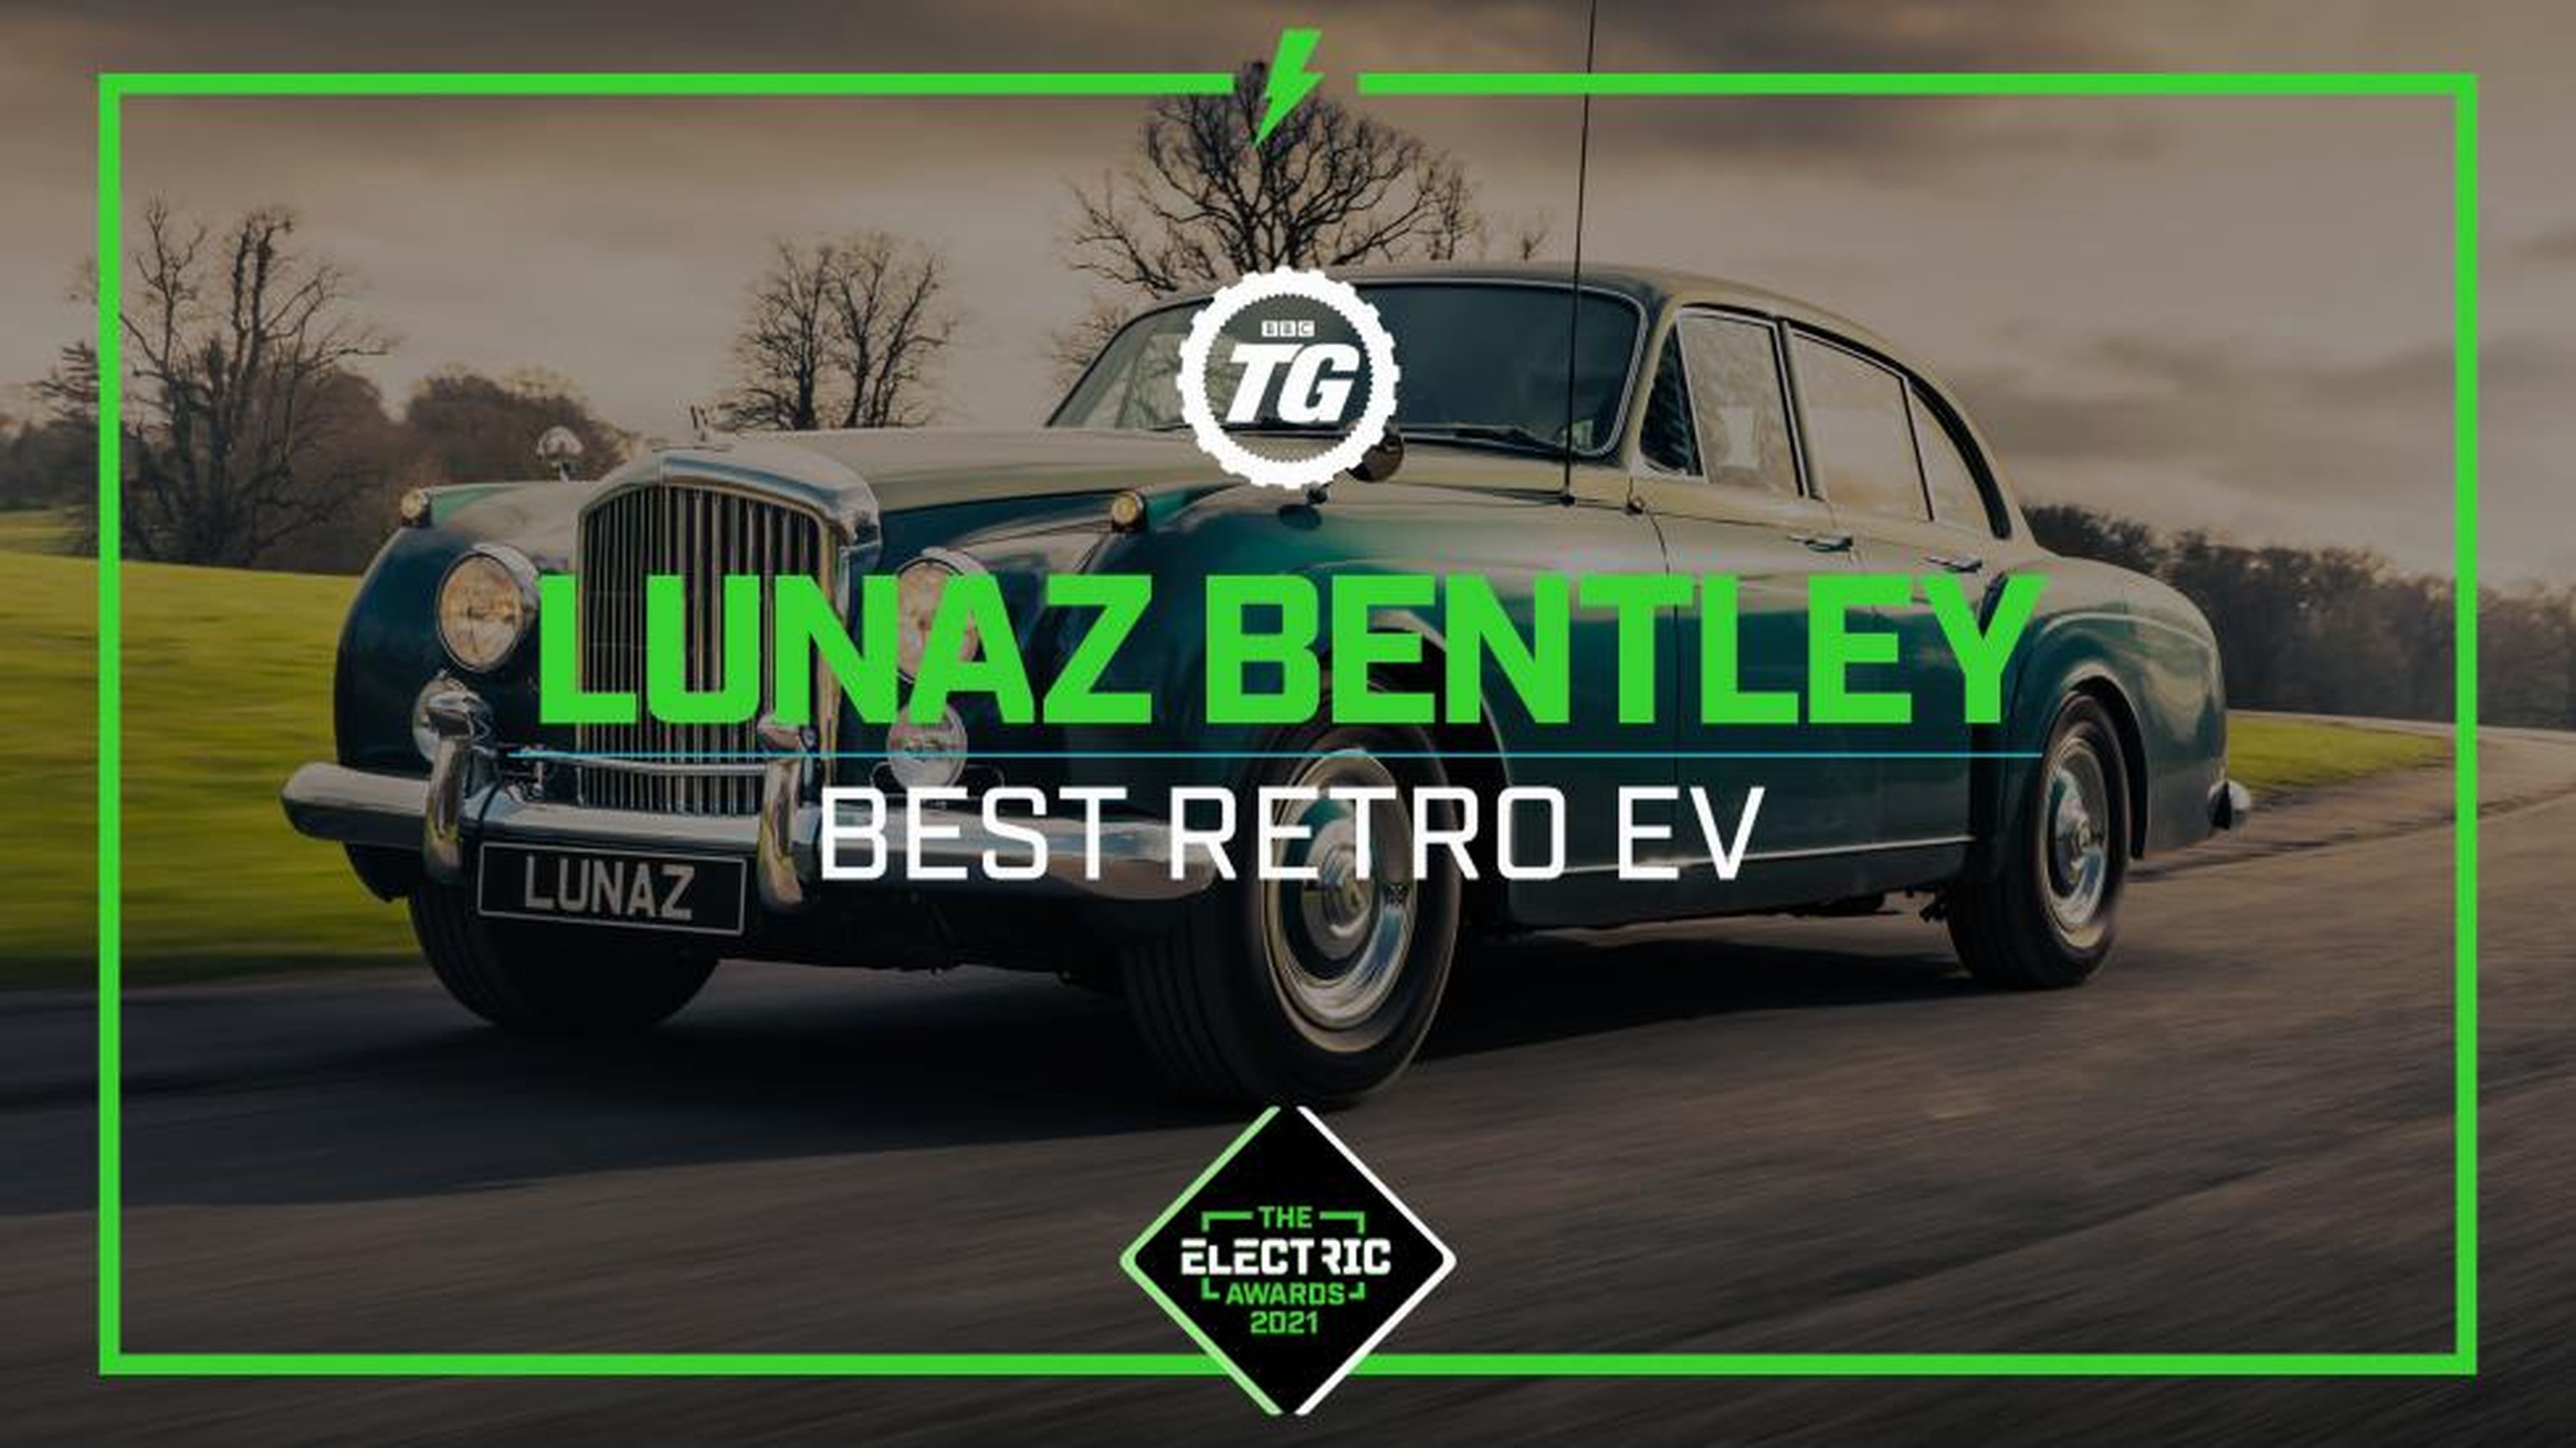 Top Gear Electric Awards: Lunaz Bentley